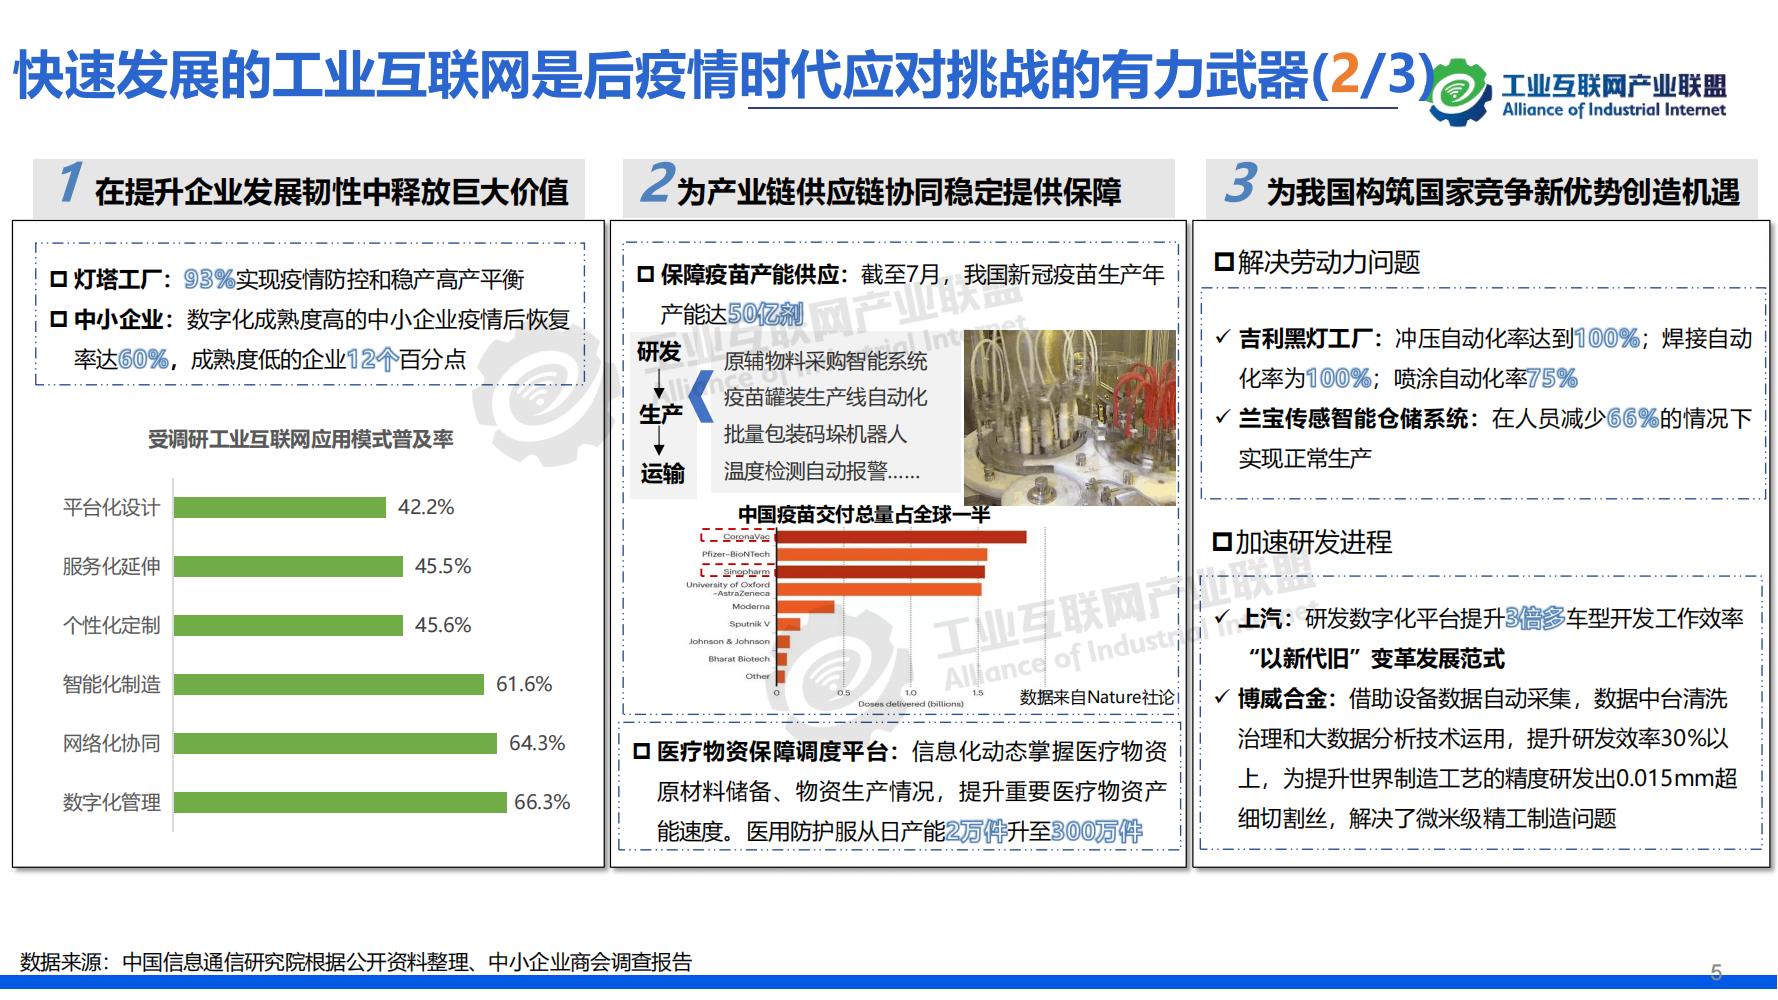 1-中国工业互联网发展成效评估报告-水印_08.jpg